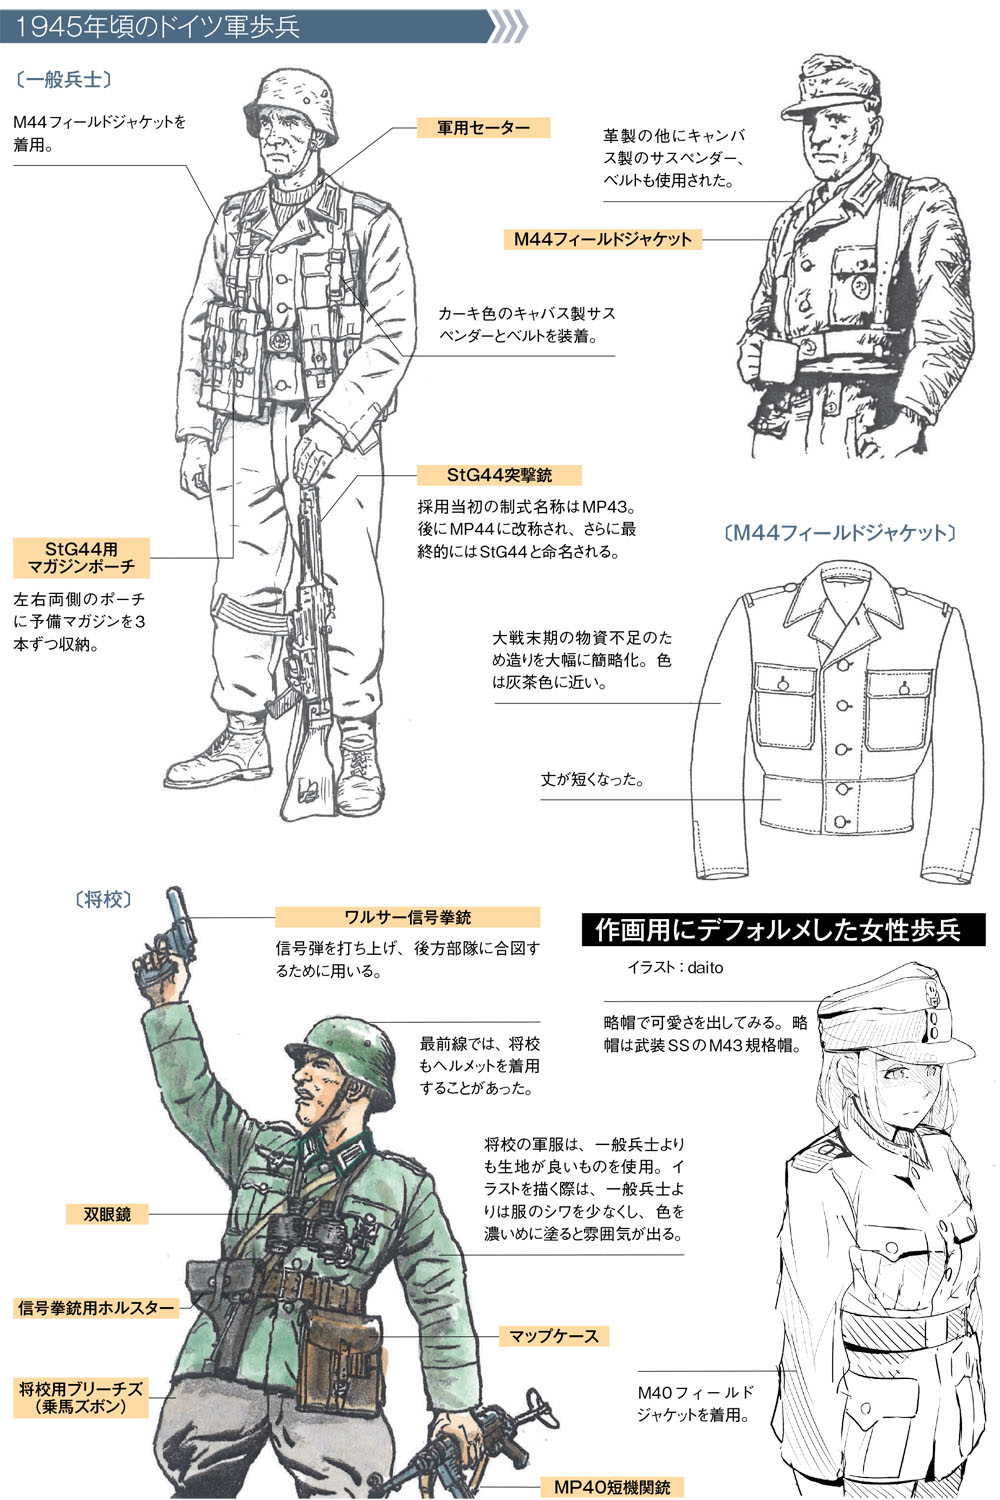 銃の持ち方 構え方は正確に描写しよう 作画のための第二次大戦軍服